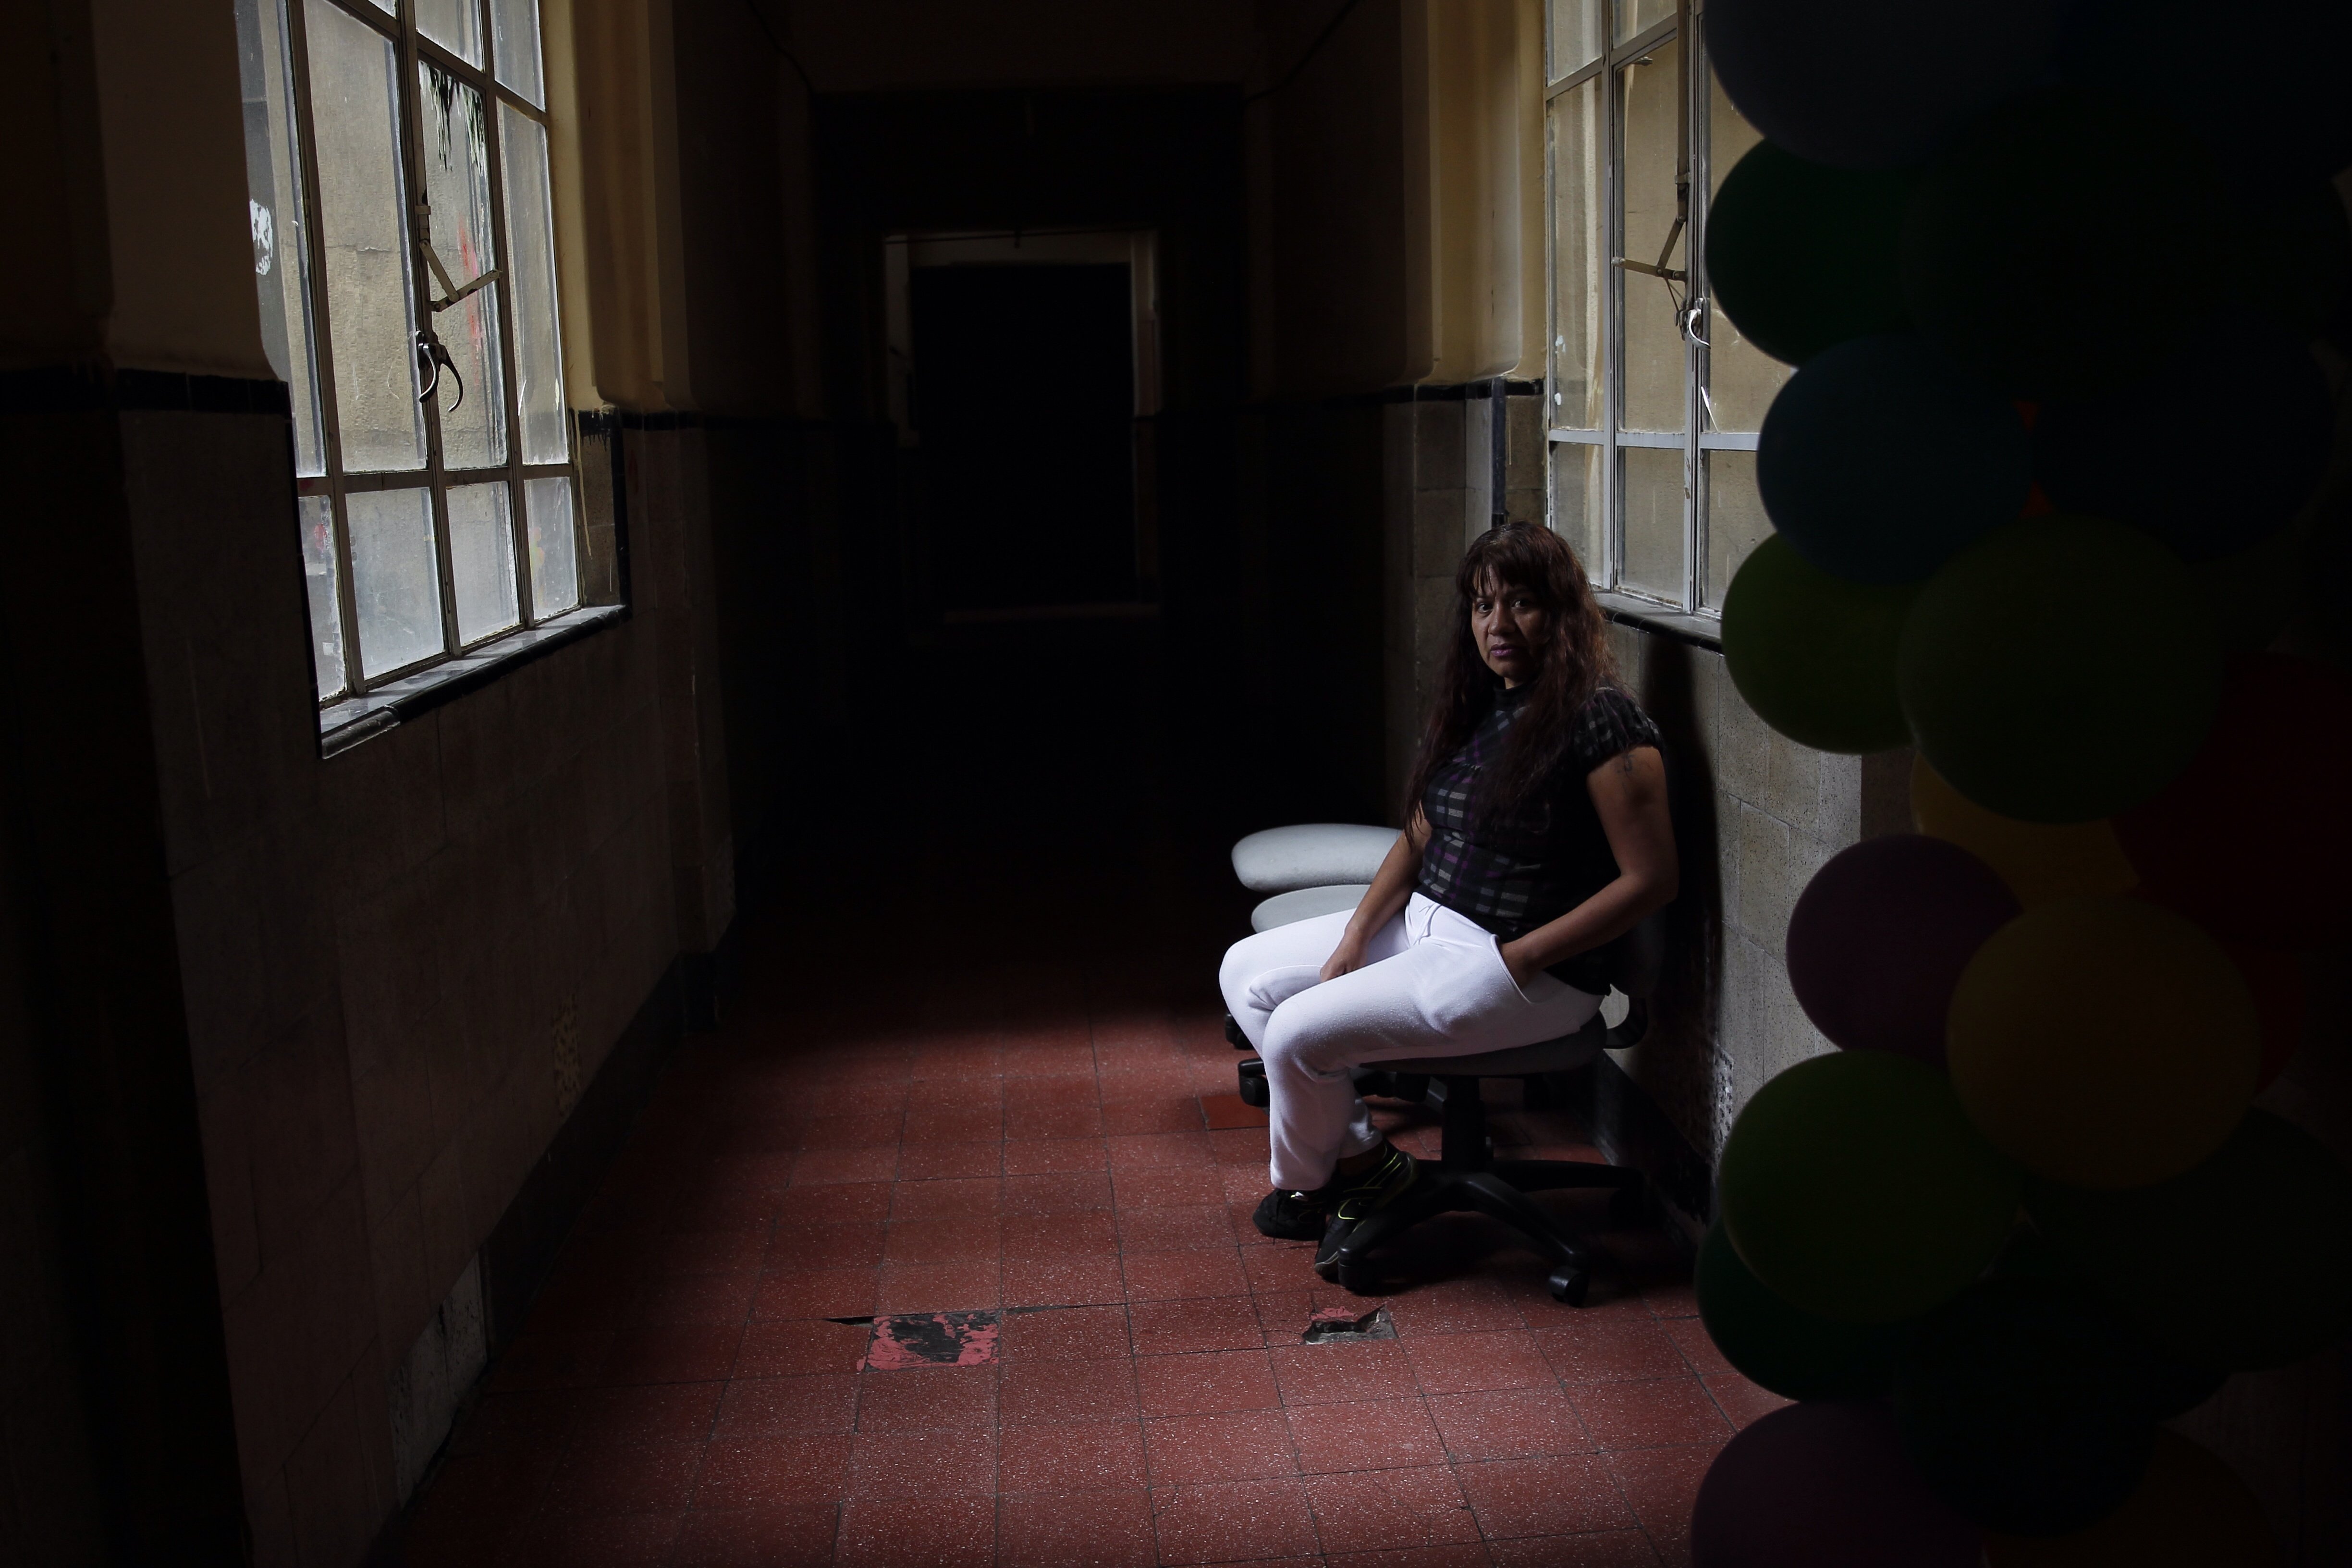  “Crecí con golpes, desprecio y rechazo”, la dura vida de las trabajadoras sexuales mexicanas